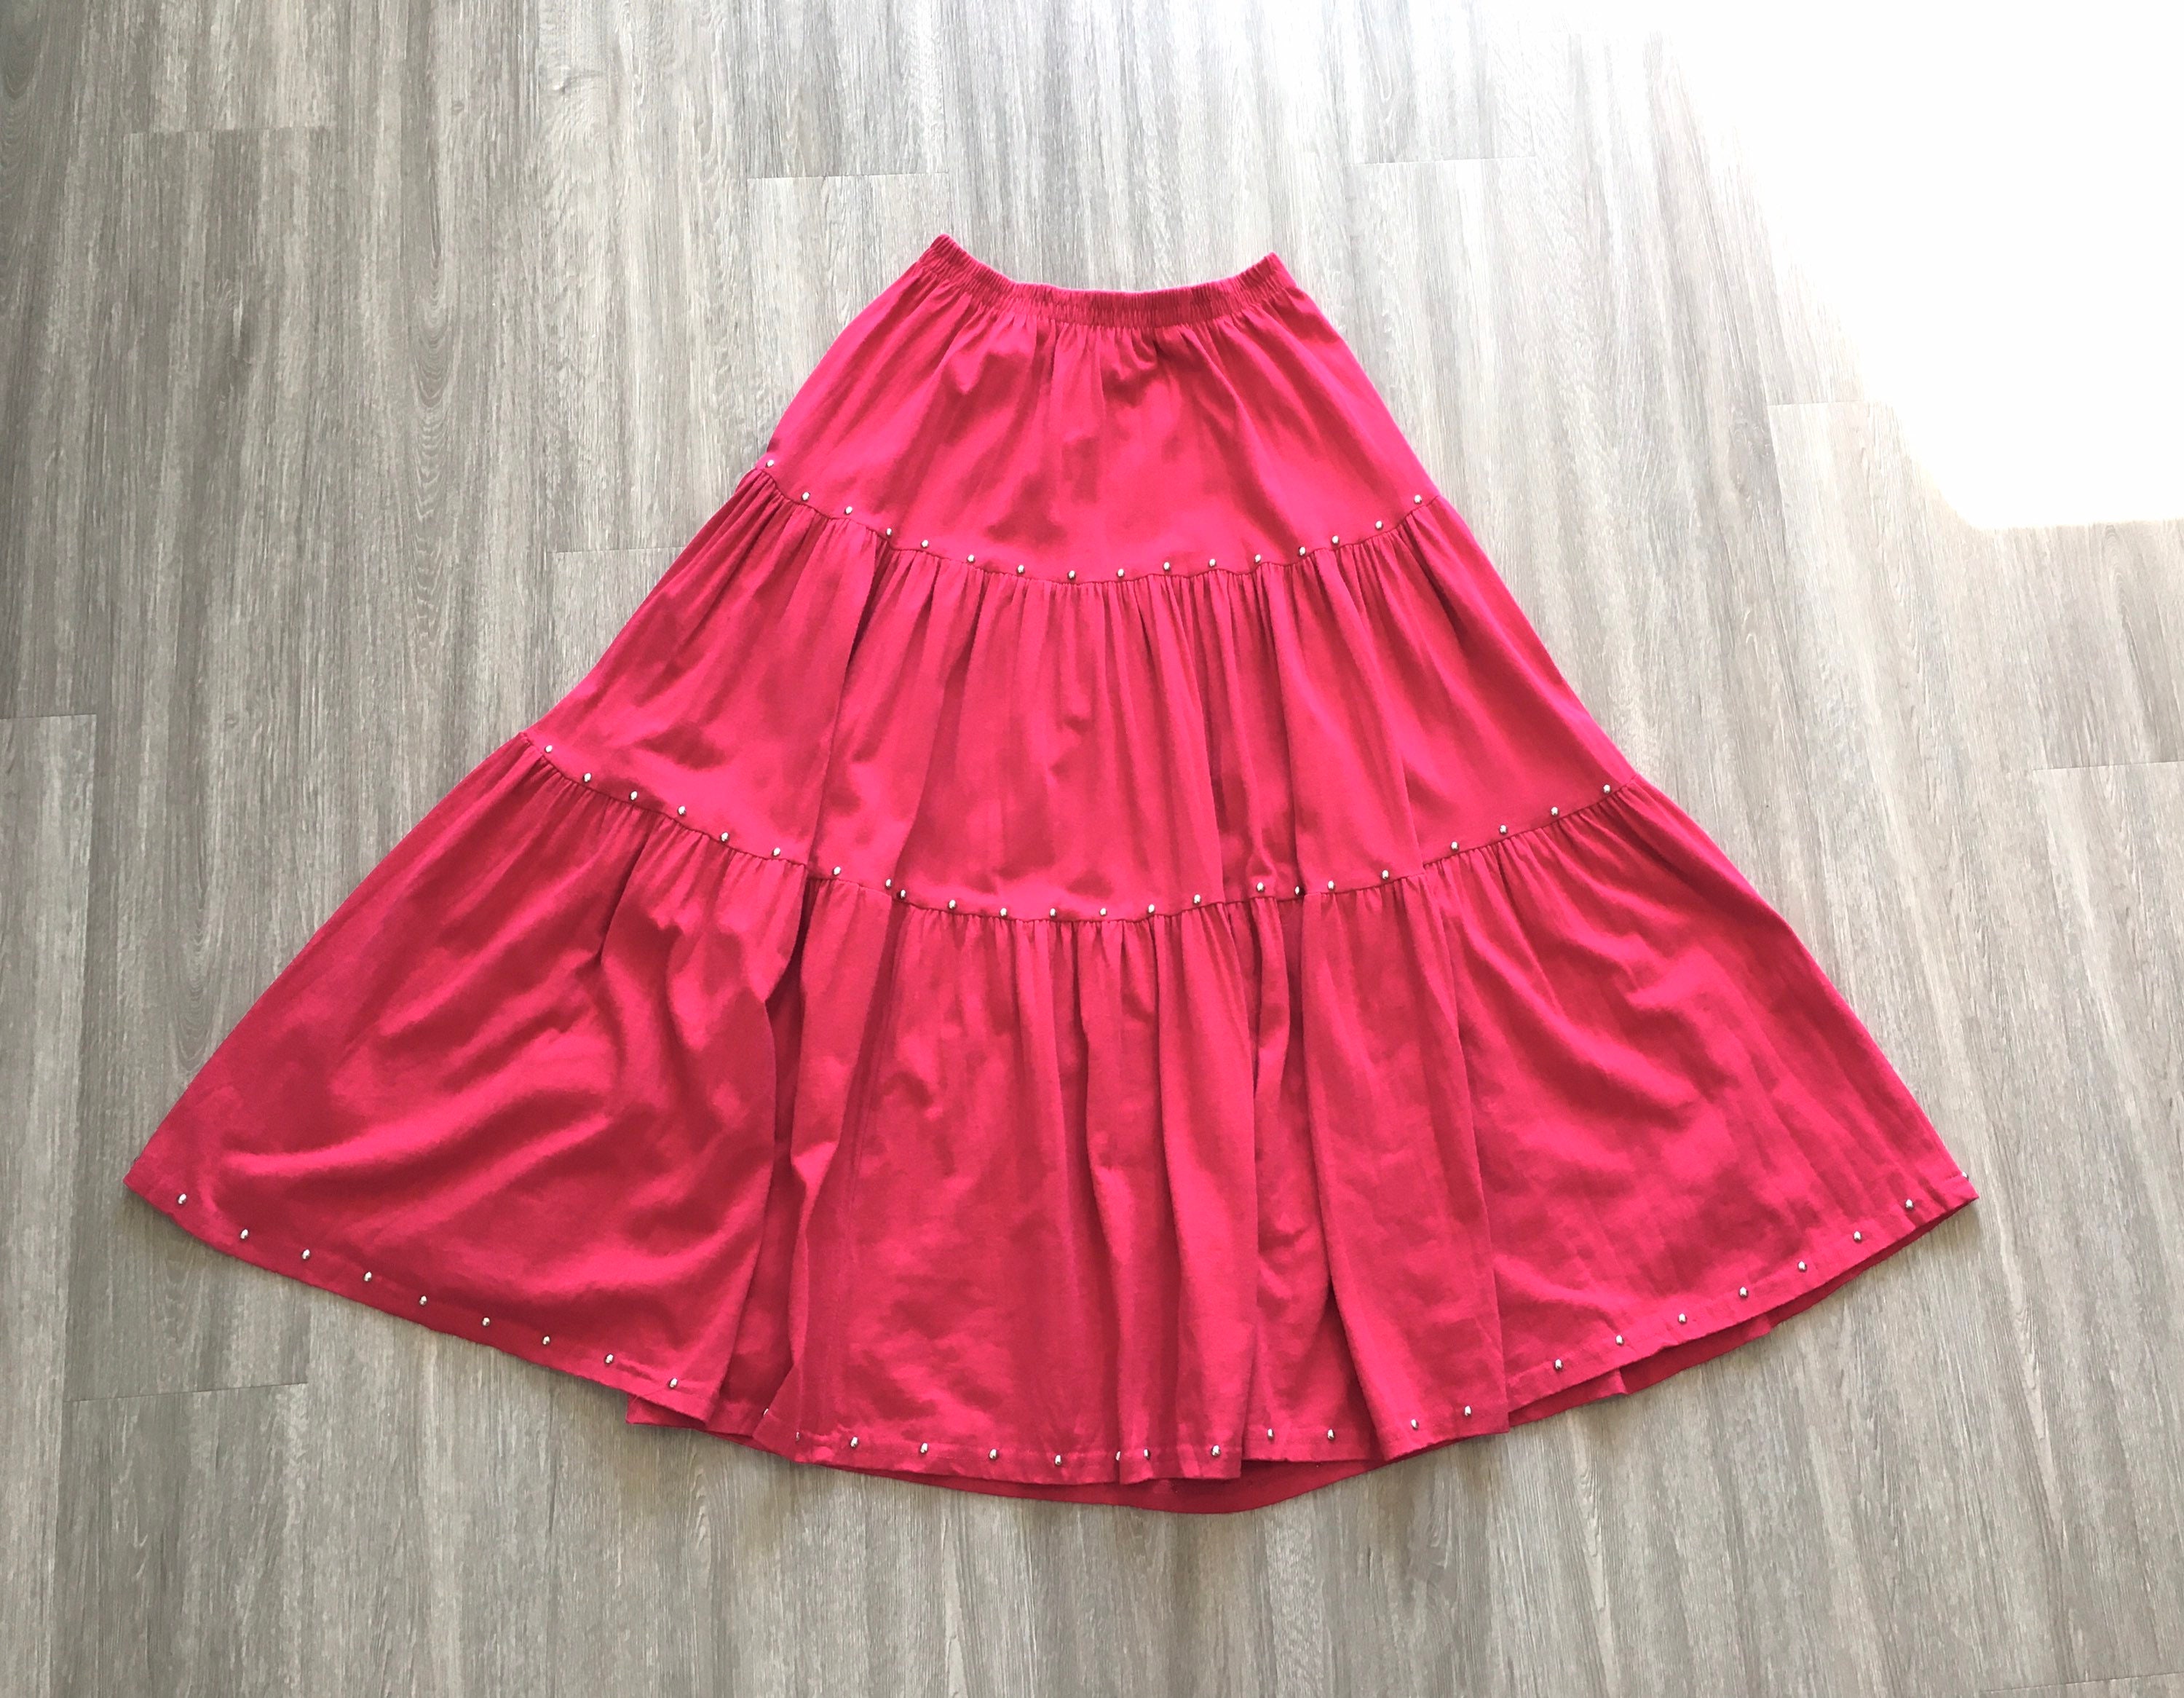 1980s Cotton Peasant Skirt1980s Hot Pink Skirt1980s Full | Etsy